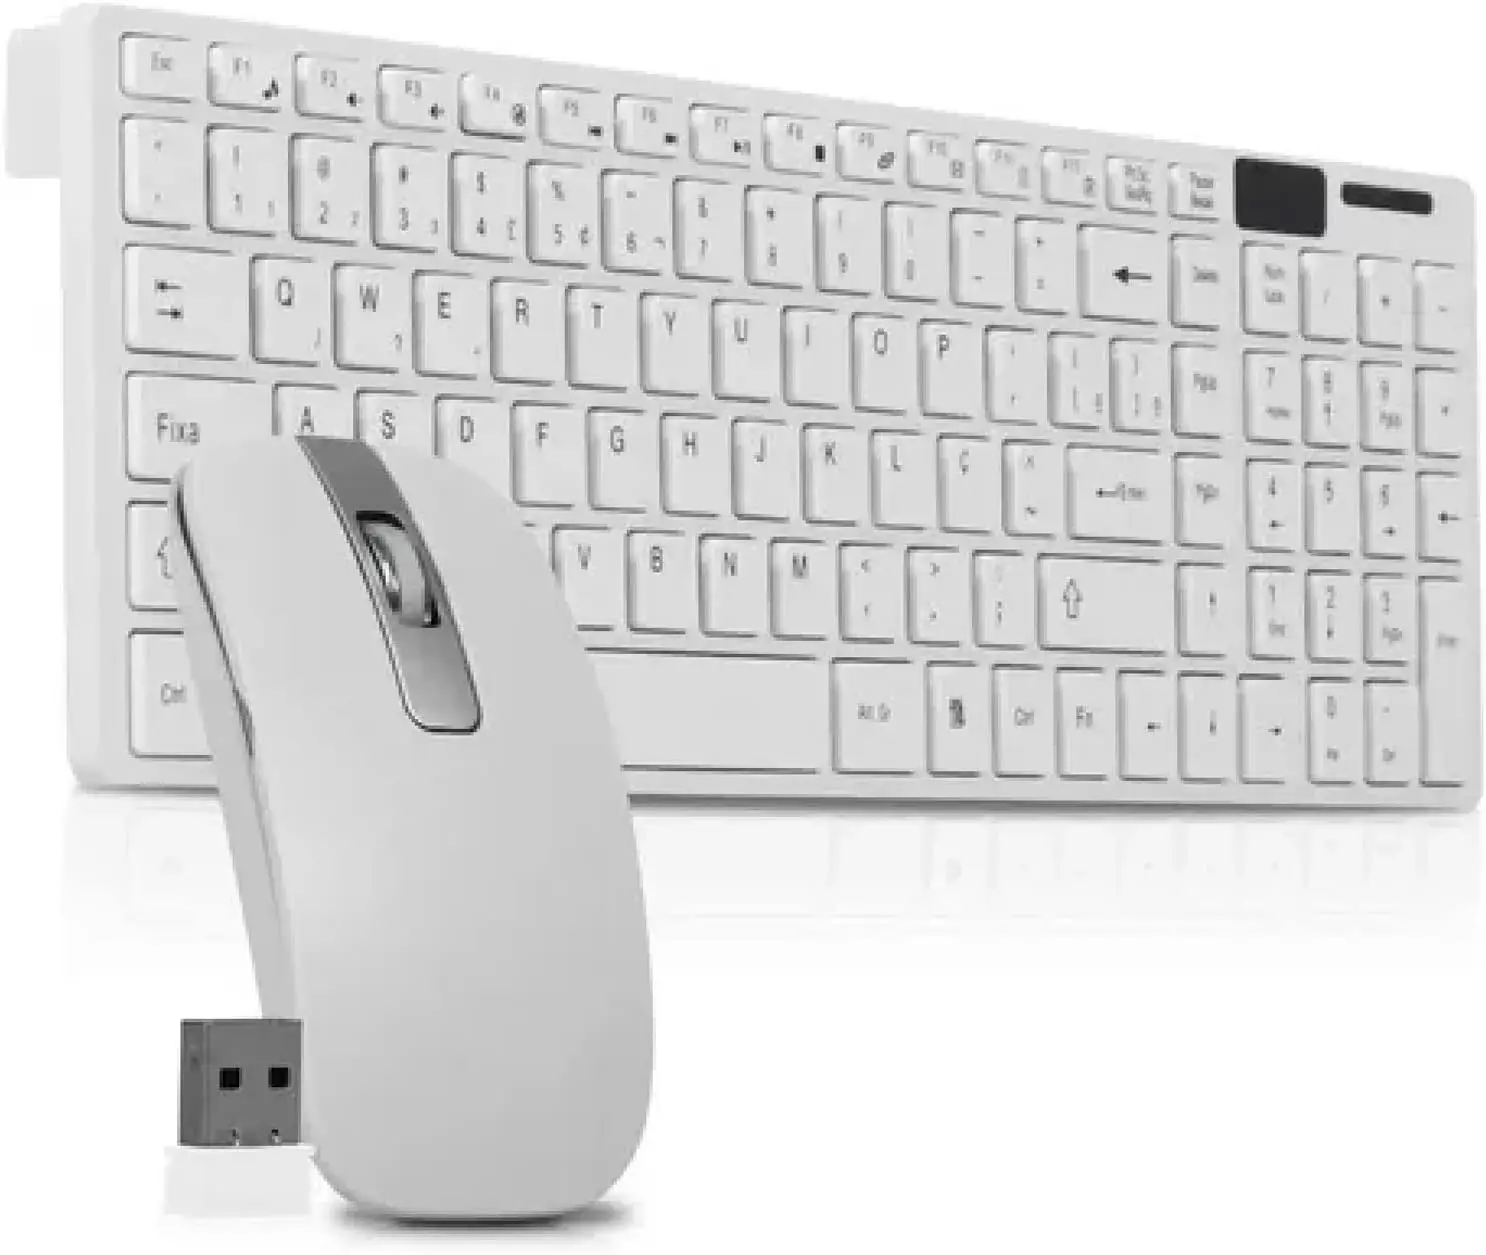 

Kit E Mouse Wireless Wireless Para Computador Pc Notebook Português Abnt 2 Com Ç Home Office teclado sem fio